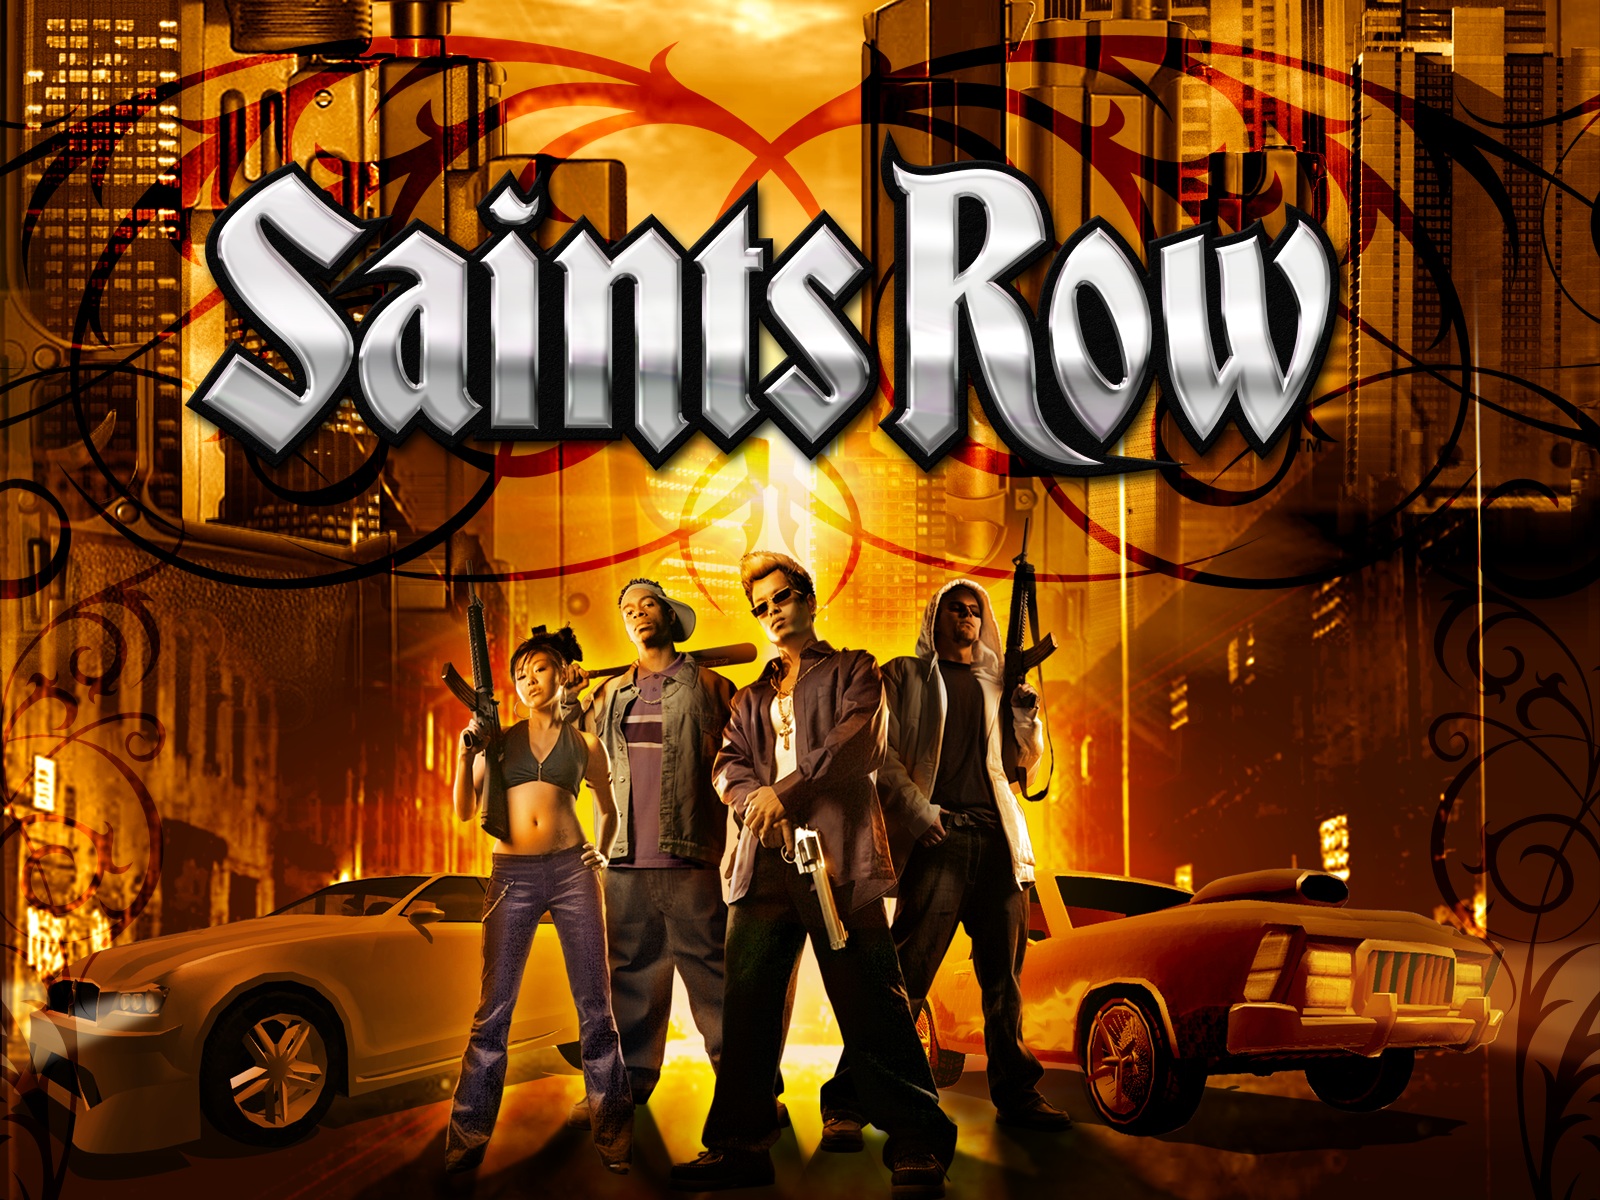 Saints Row 1